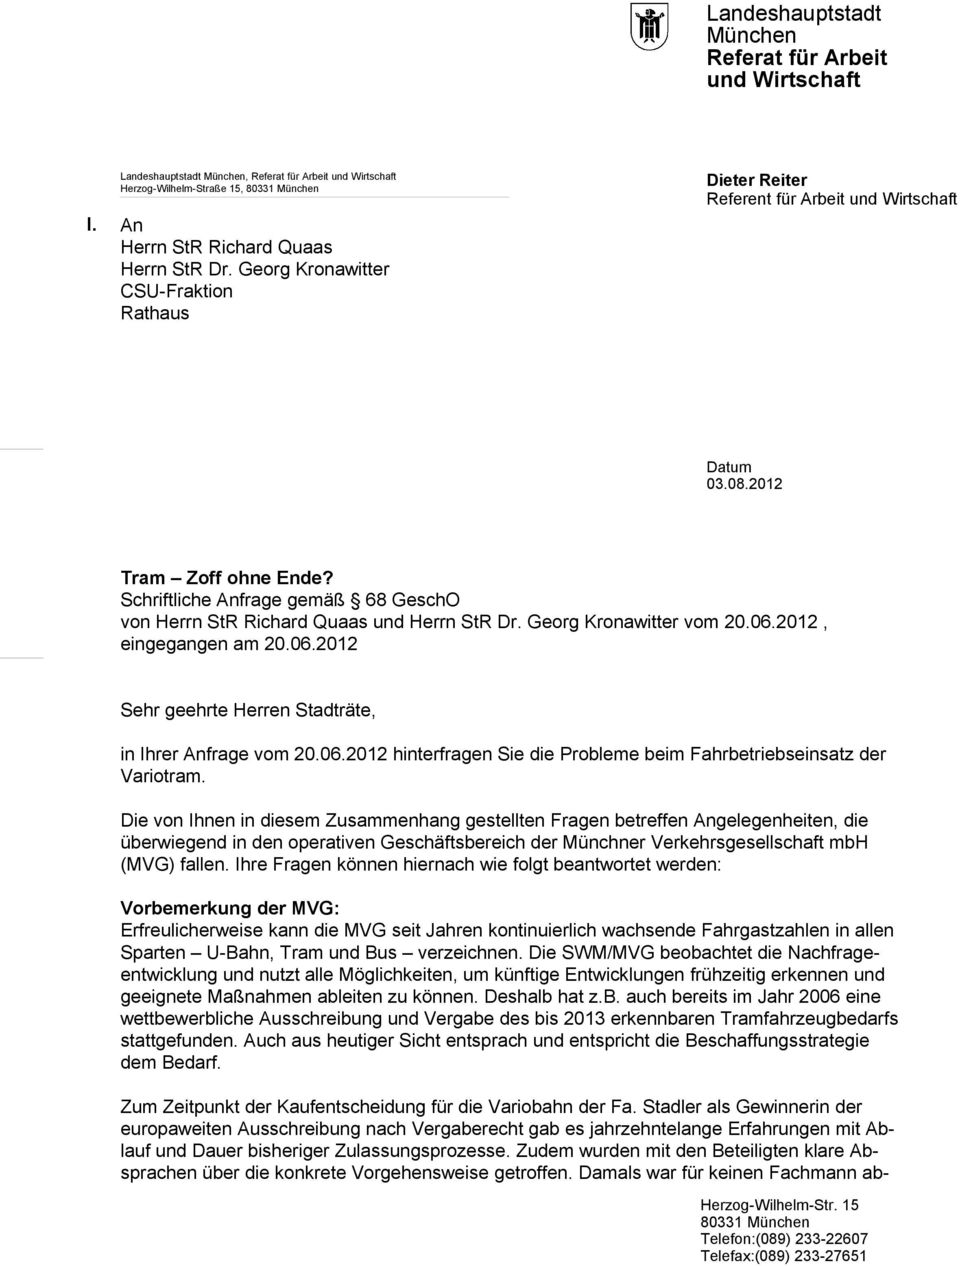 Georg Kronawitter CSU-Fraktion Rathaus Dieter Reiter Referent für Arbeit und Wirtschaft Datum 03.08.2012 Tram Zoff ohne Ende?